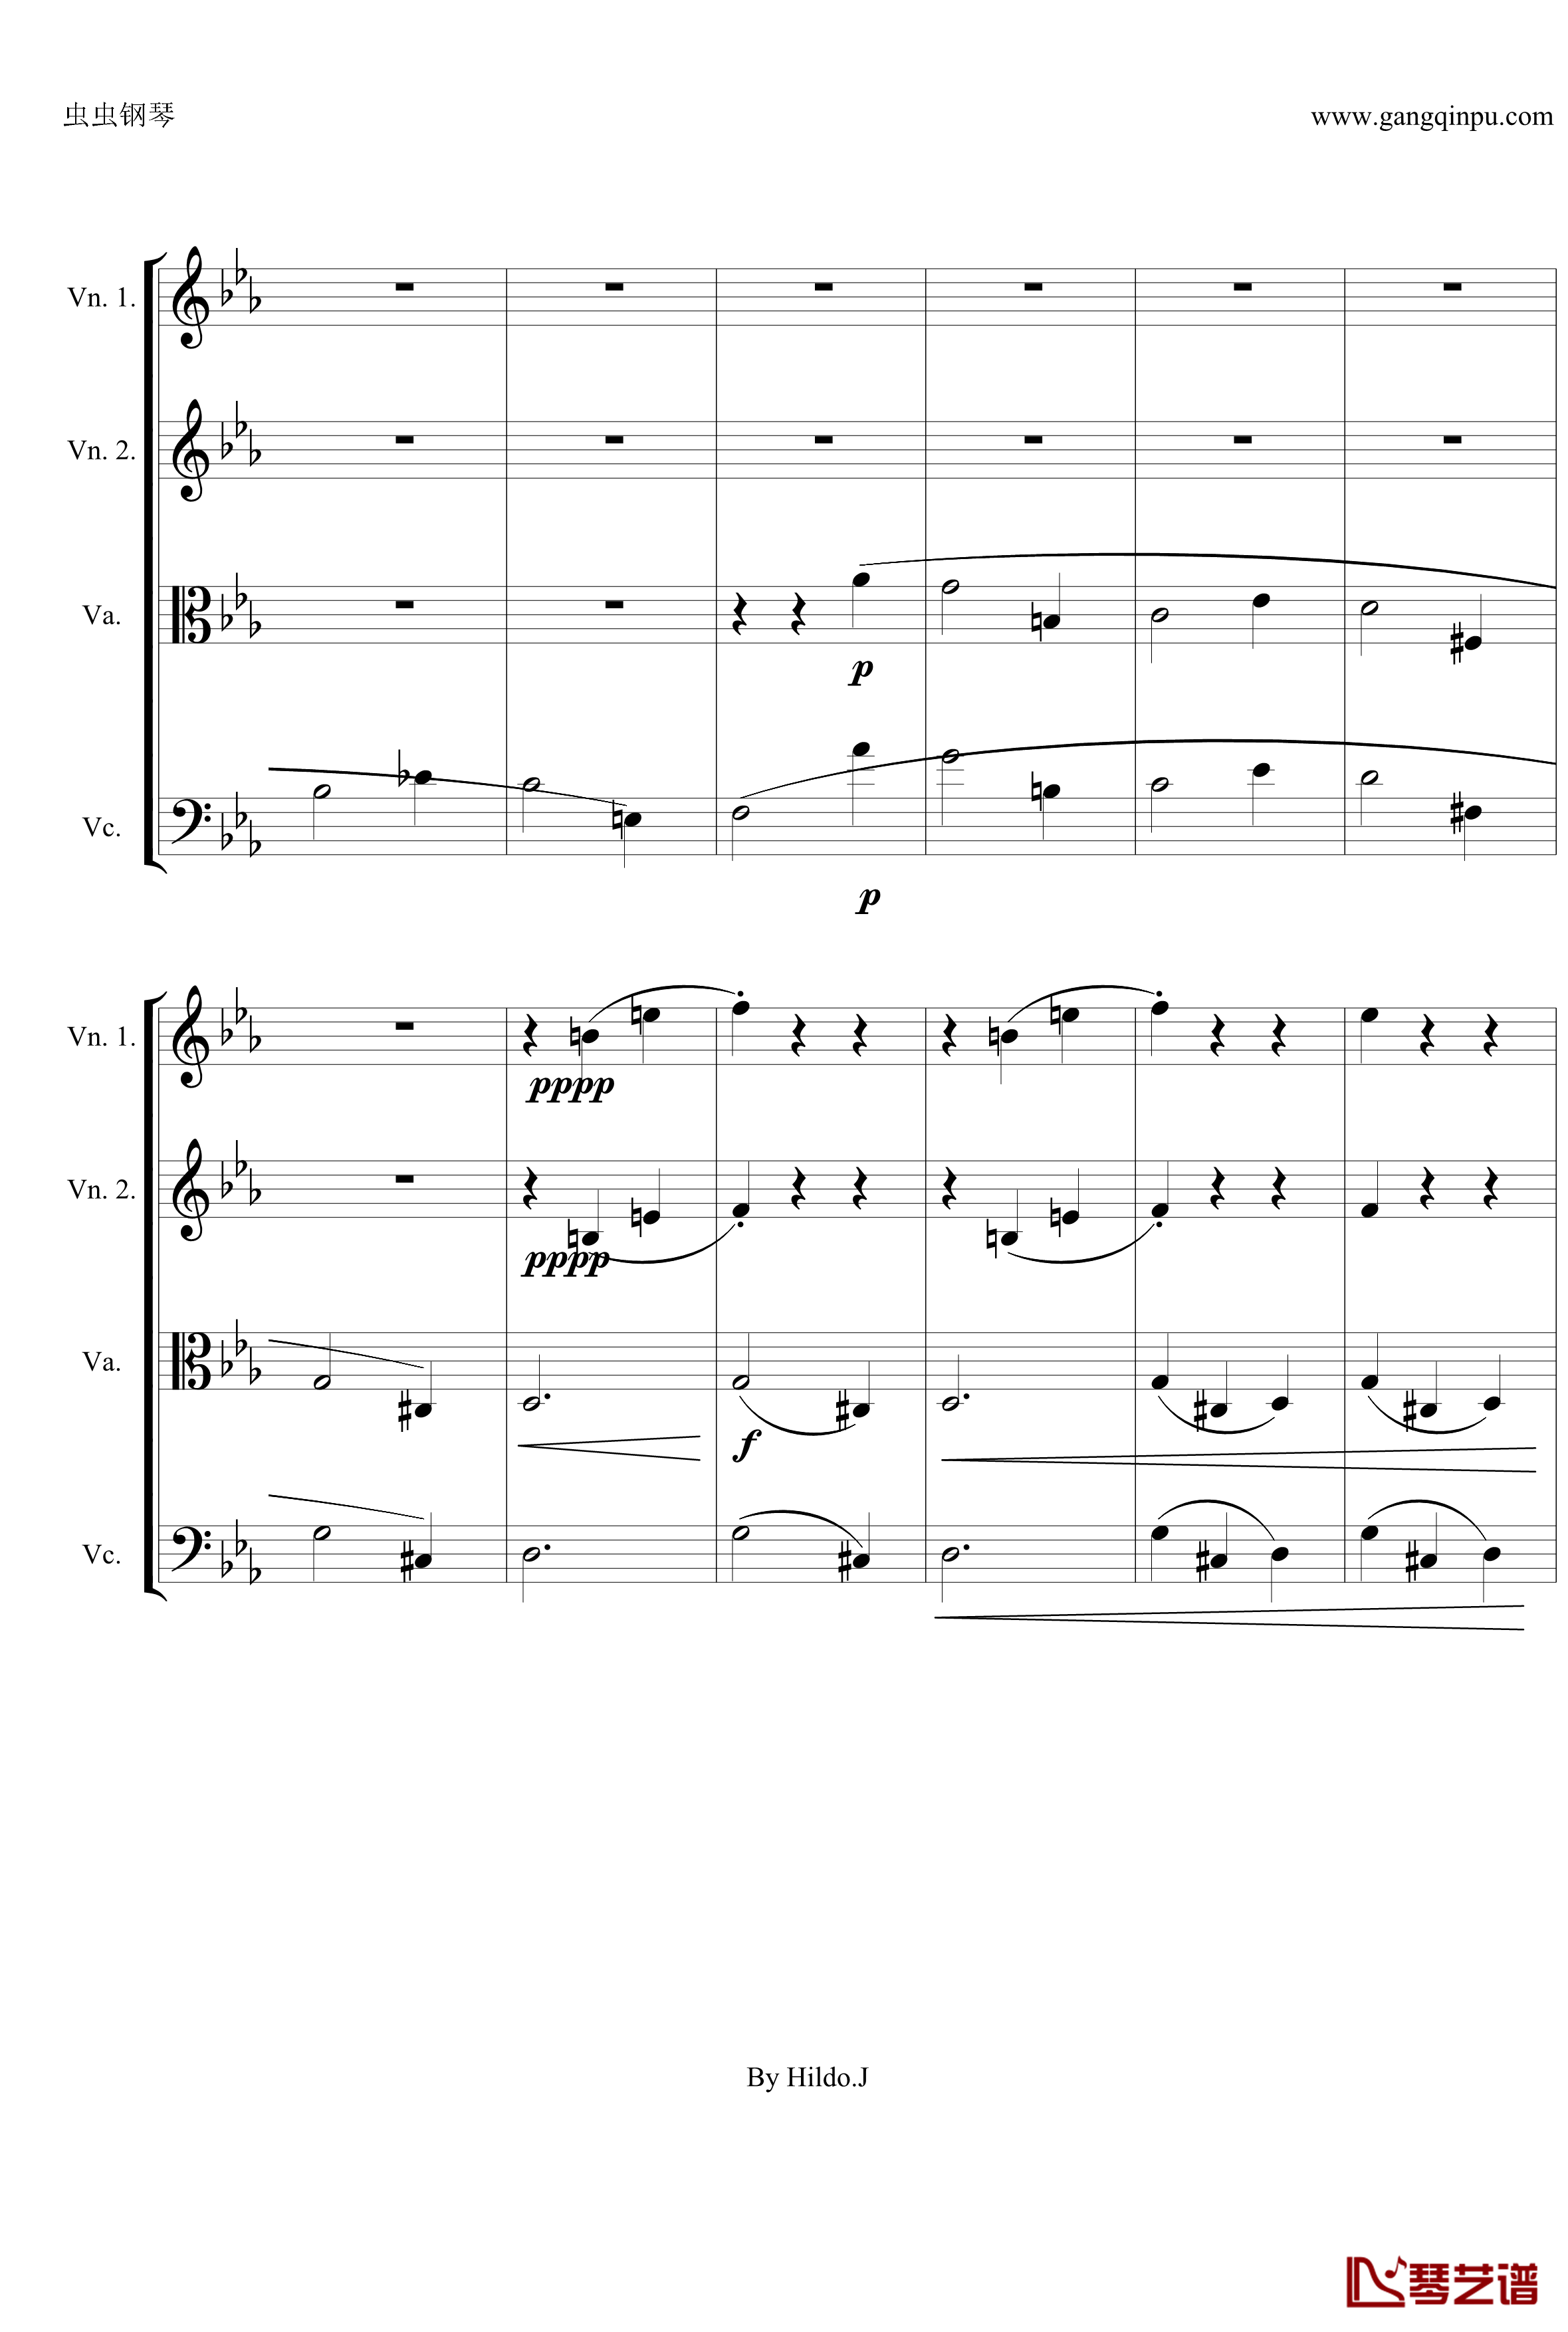 命运交响曲第三乐章钢琴谱-弦乐版-贝多芬-beethoven5